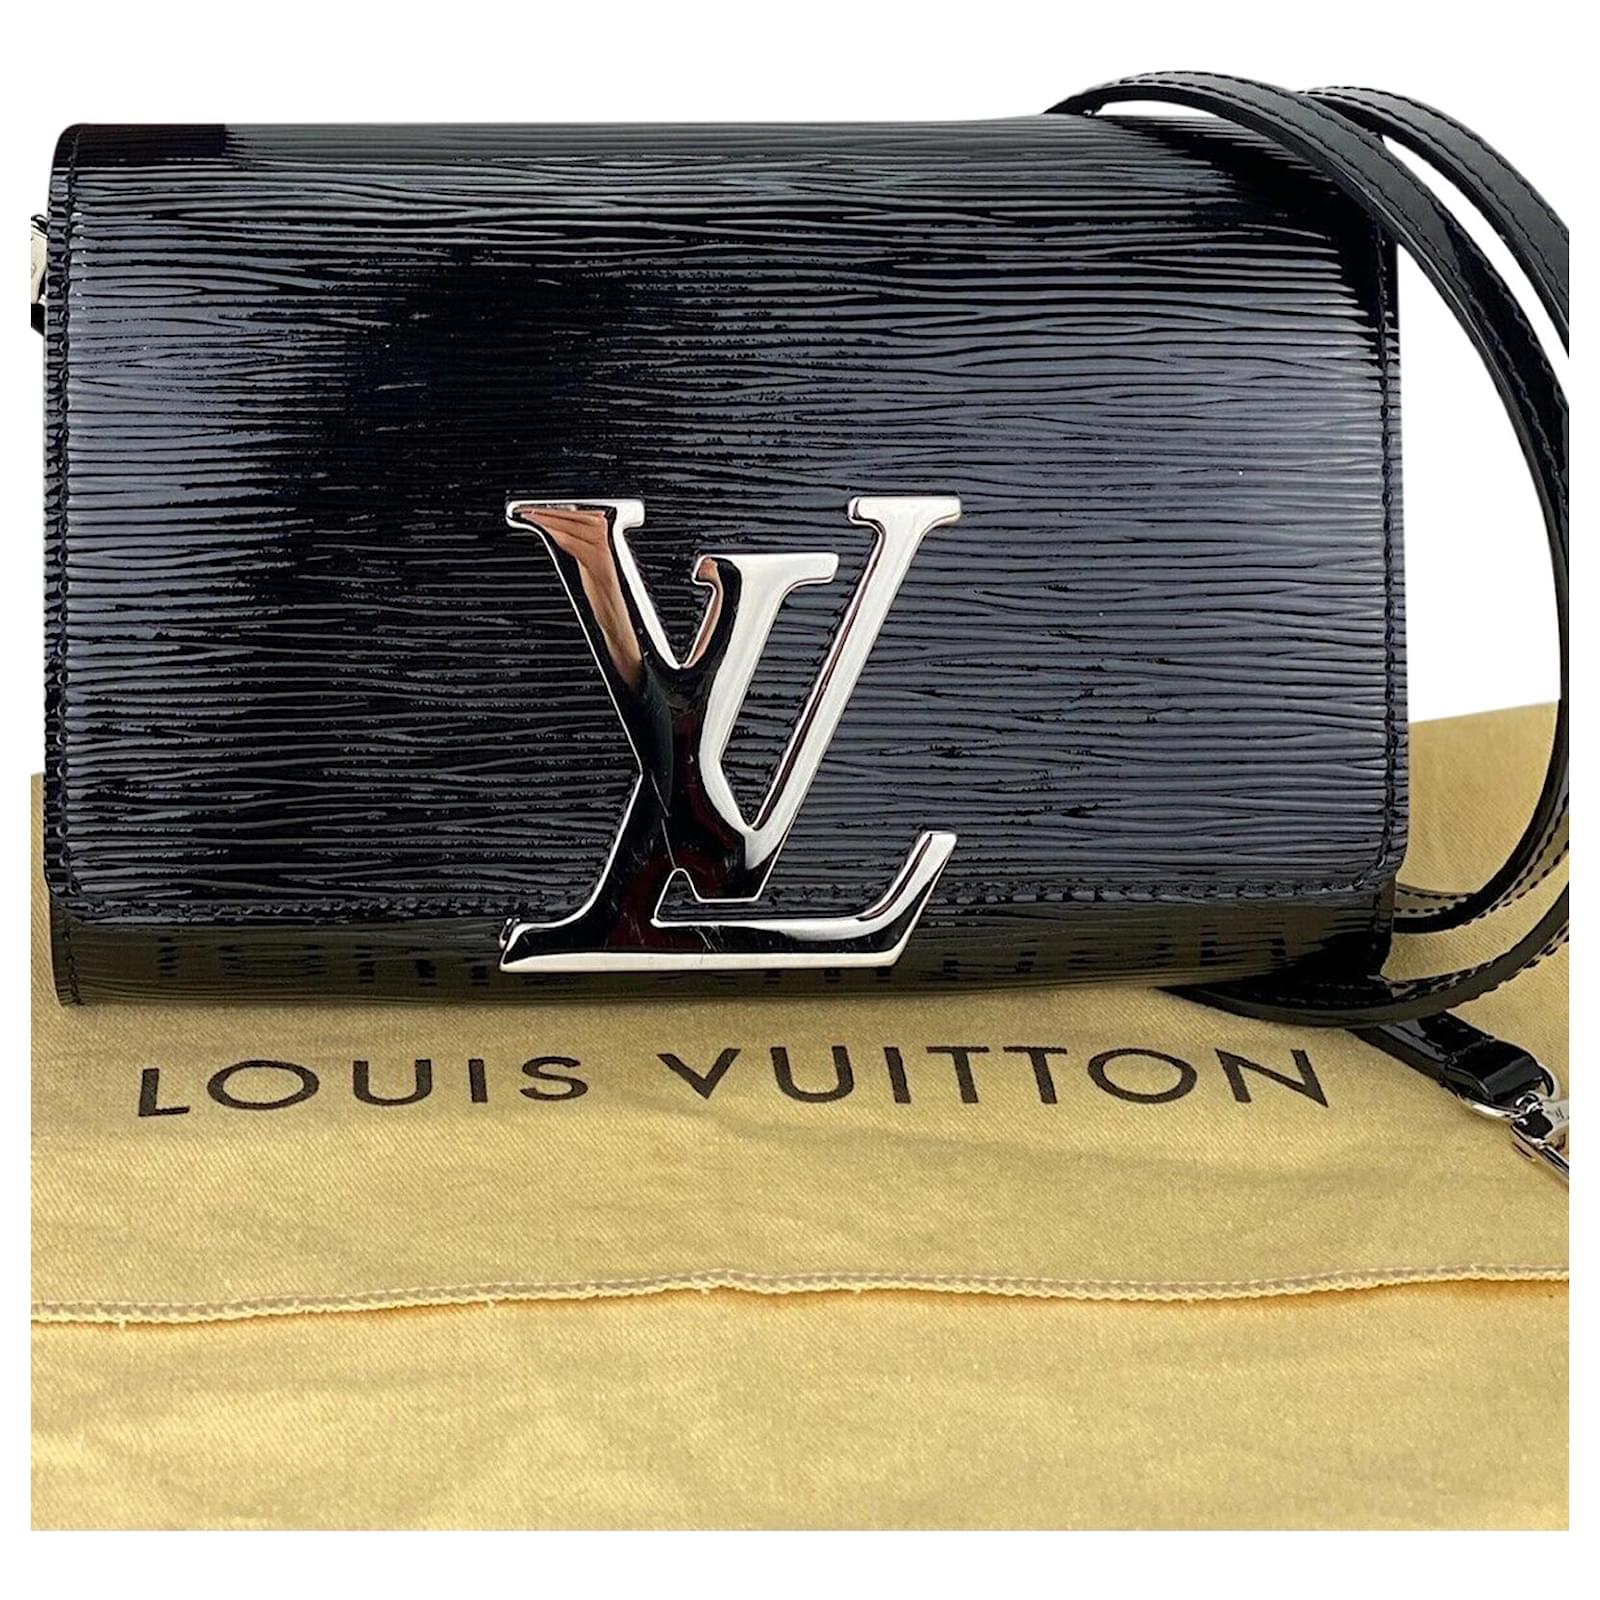 Louis Vuitton, Bags, Authentic Louis Vuitton Clutch